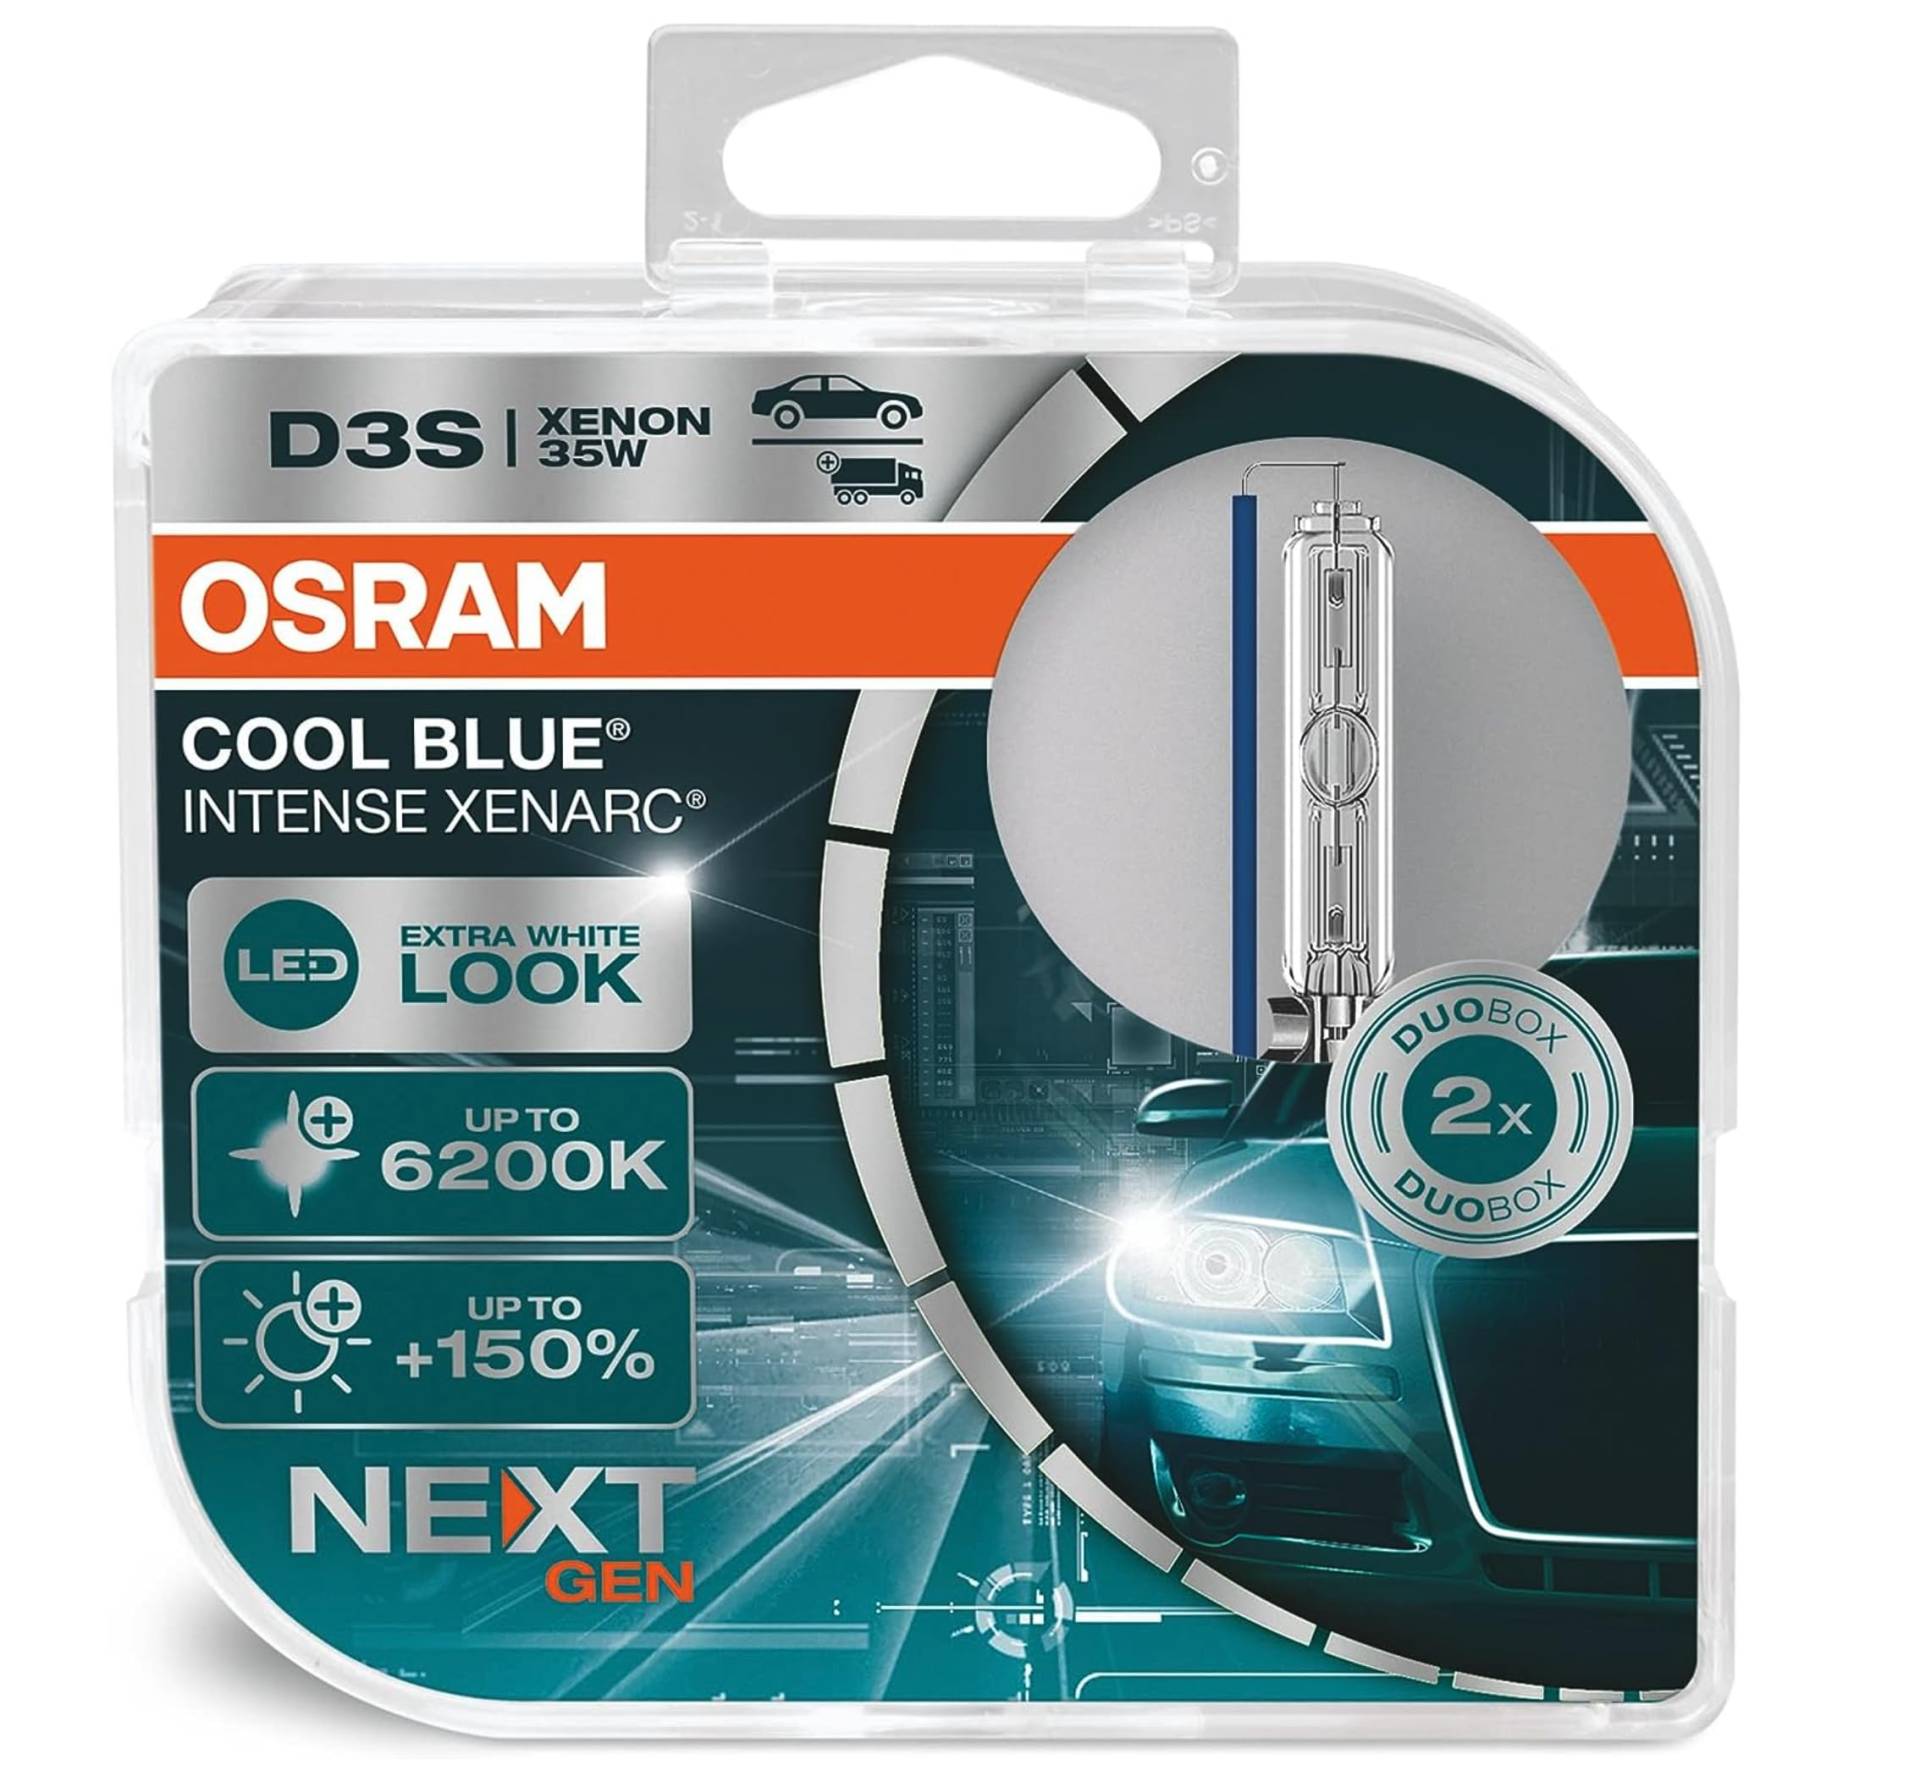 OSRAM Xenarc Cool Blue Intense D3S, 150 Prozent Mehr Helligkeit, Bis Zu 6.200 K, Xenon-Scheinwerferlampe, Led Look, White - Duo Box (2 Lampen) von Osram